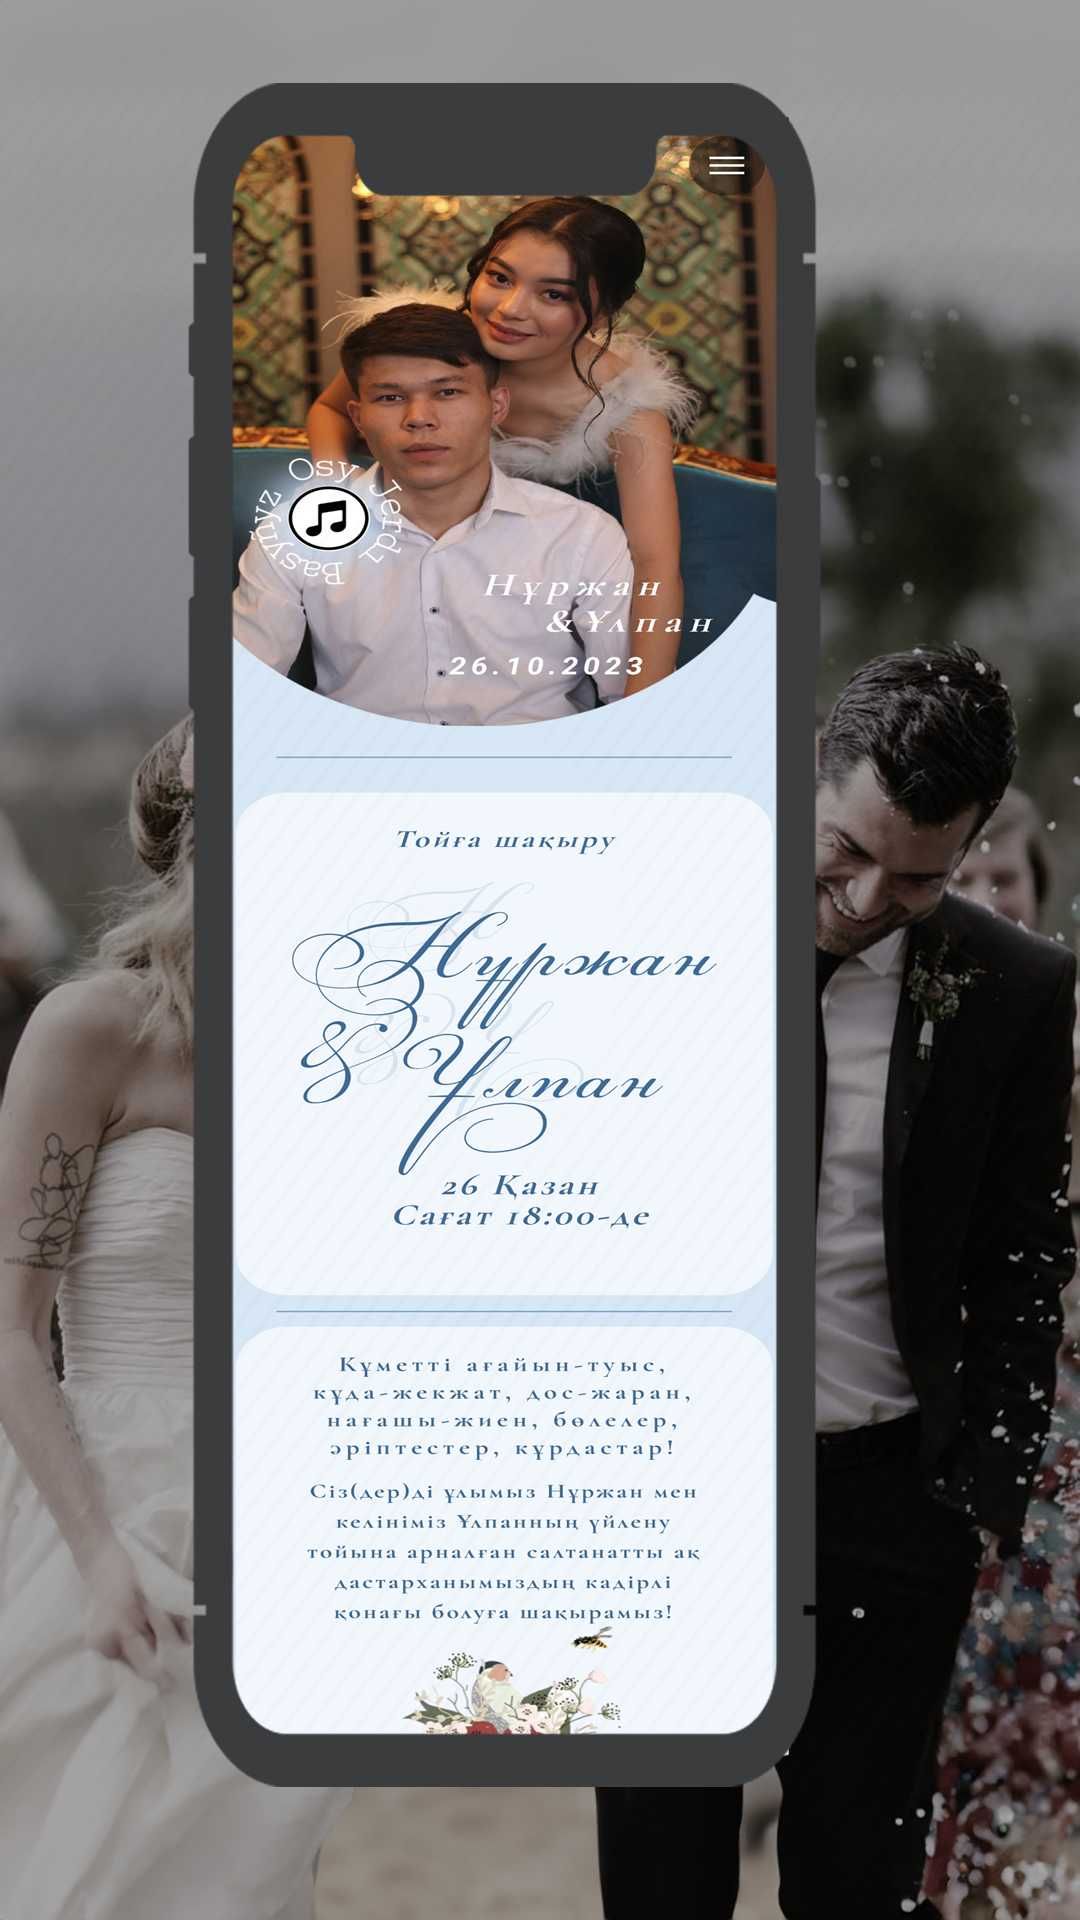 Сайт-пригласительное на свадьбу, қыз-ұзату Костанай